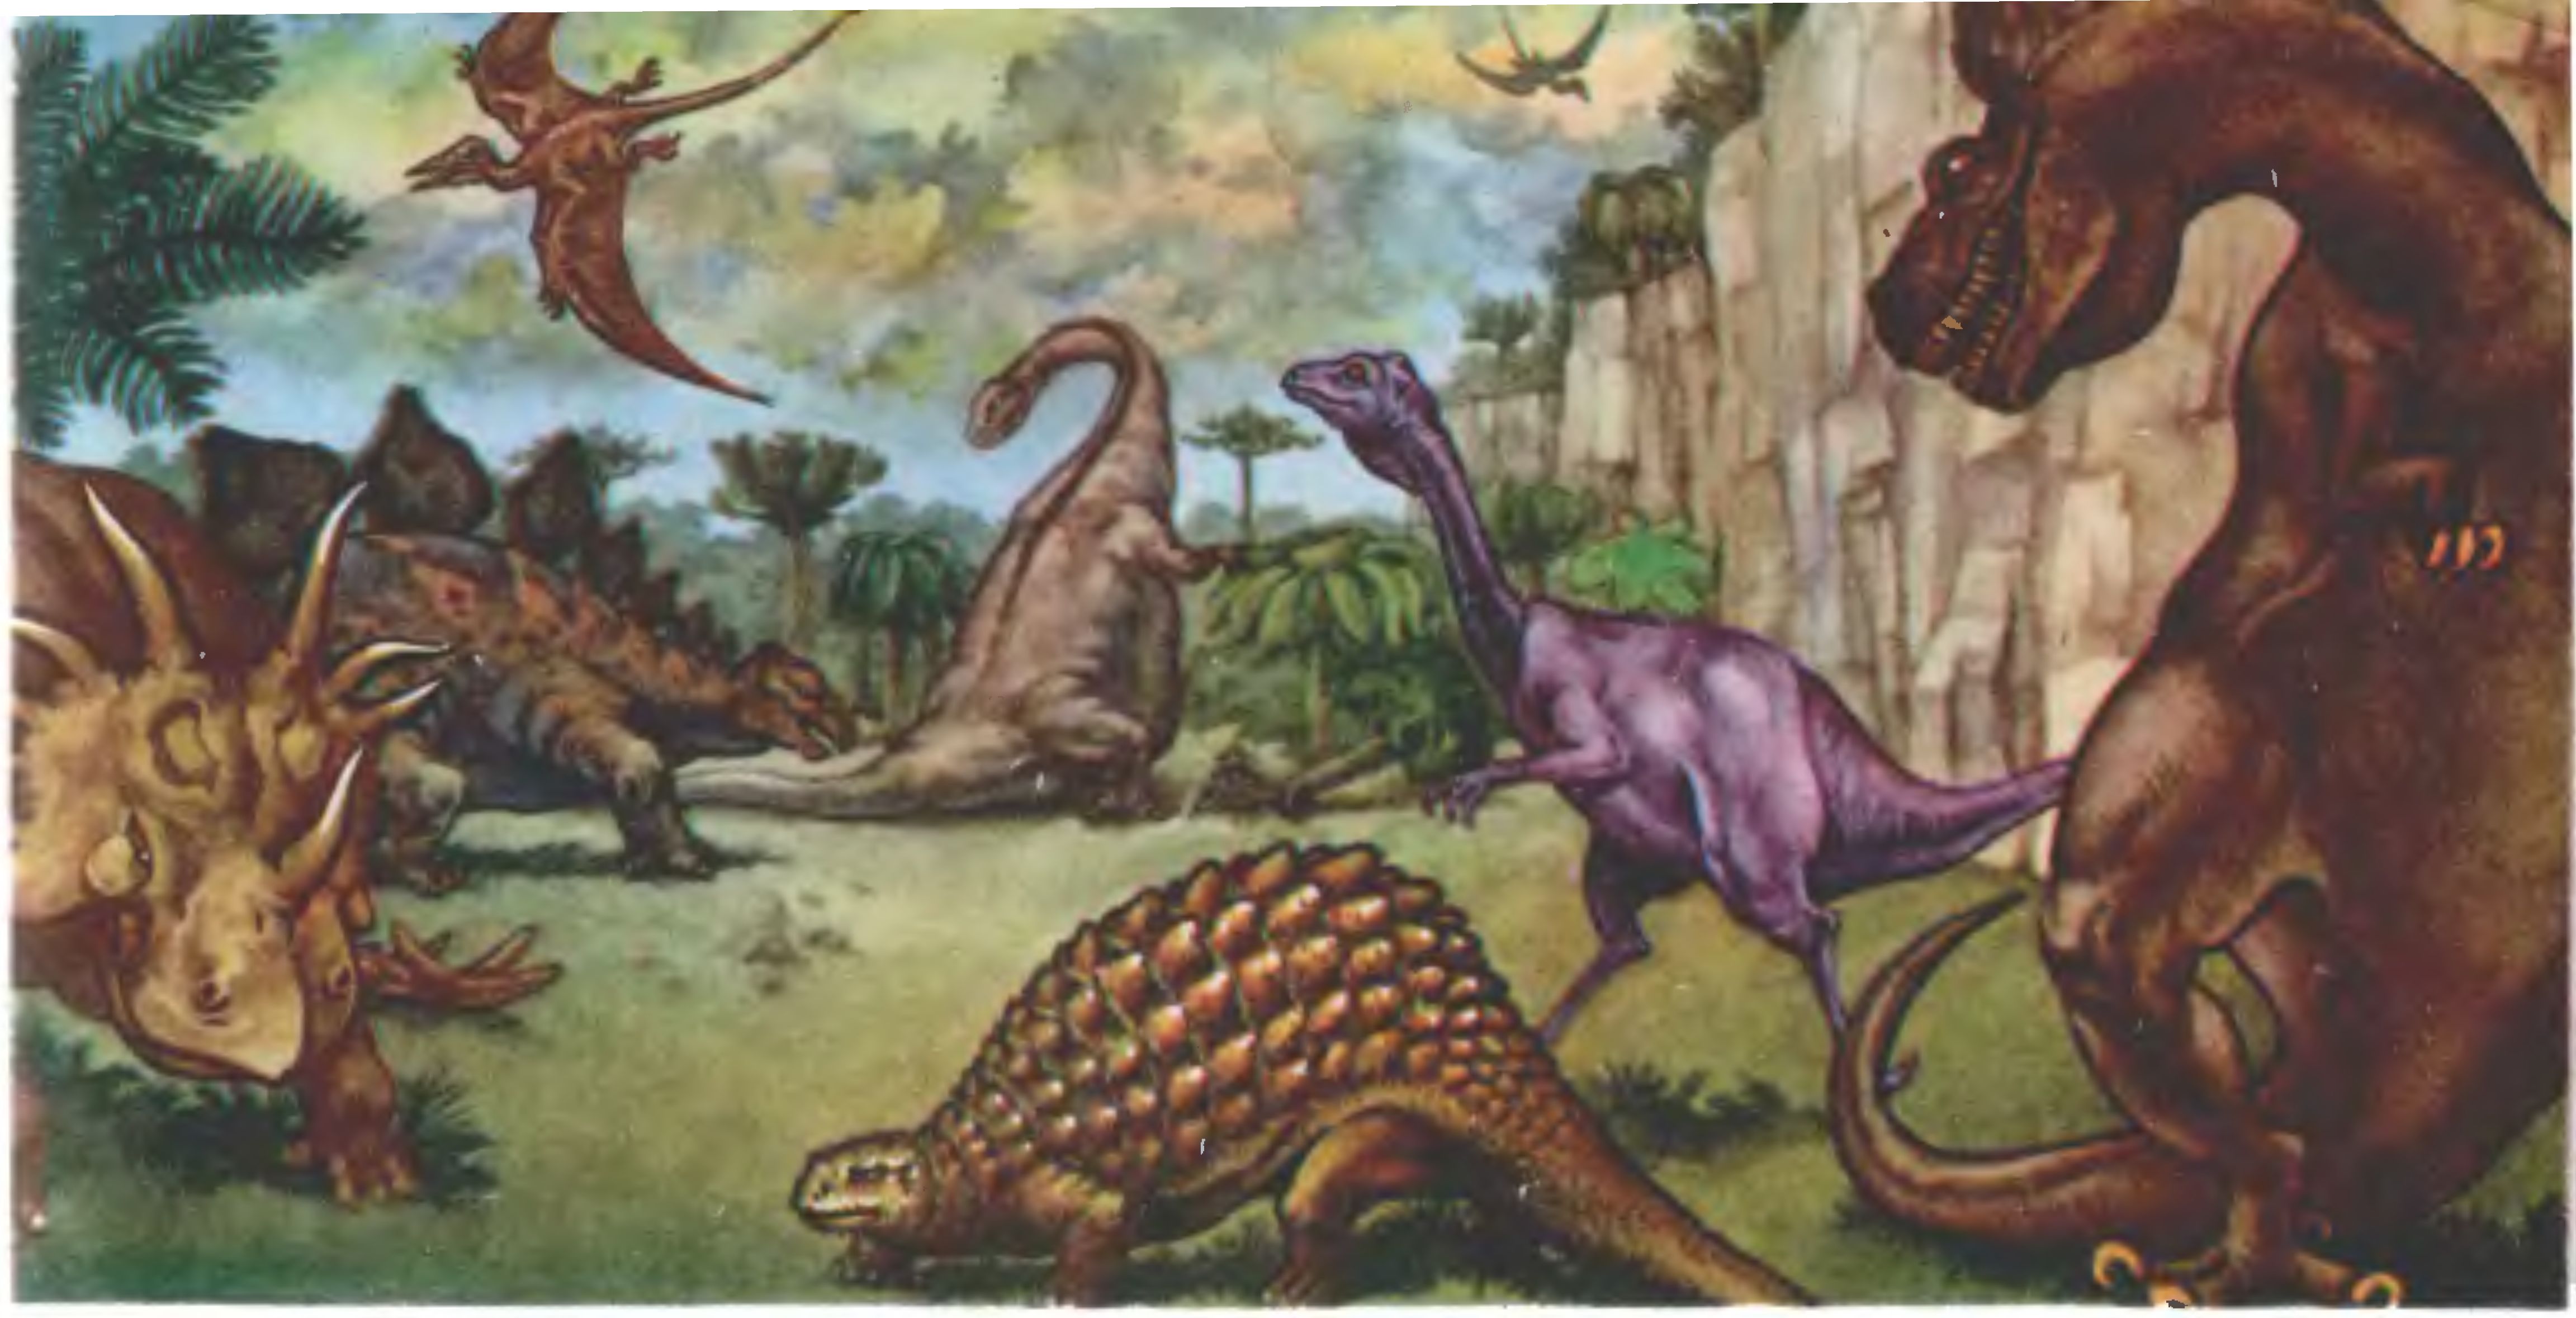 Так выглядел мир 60 млн. лет назад. Изображенные справа панцирный динозавр — таларурус, орнитомим, отдаленно напоминающий страуса, и знаменитый тираннозавр реконструированы по результатам экспедиции И. Ефремова в пустыню Гоби